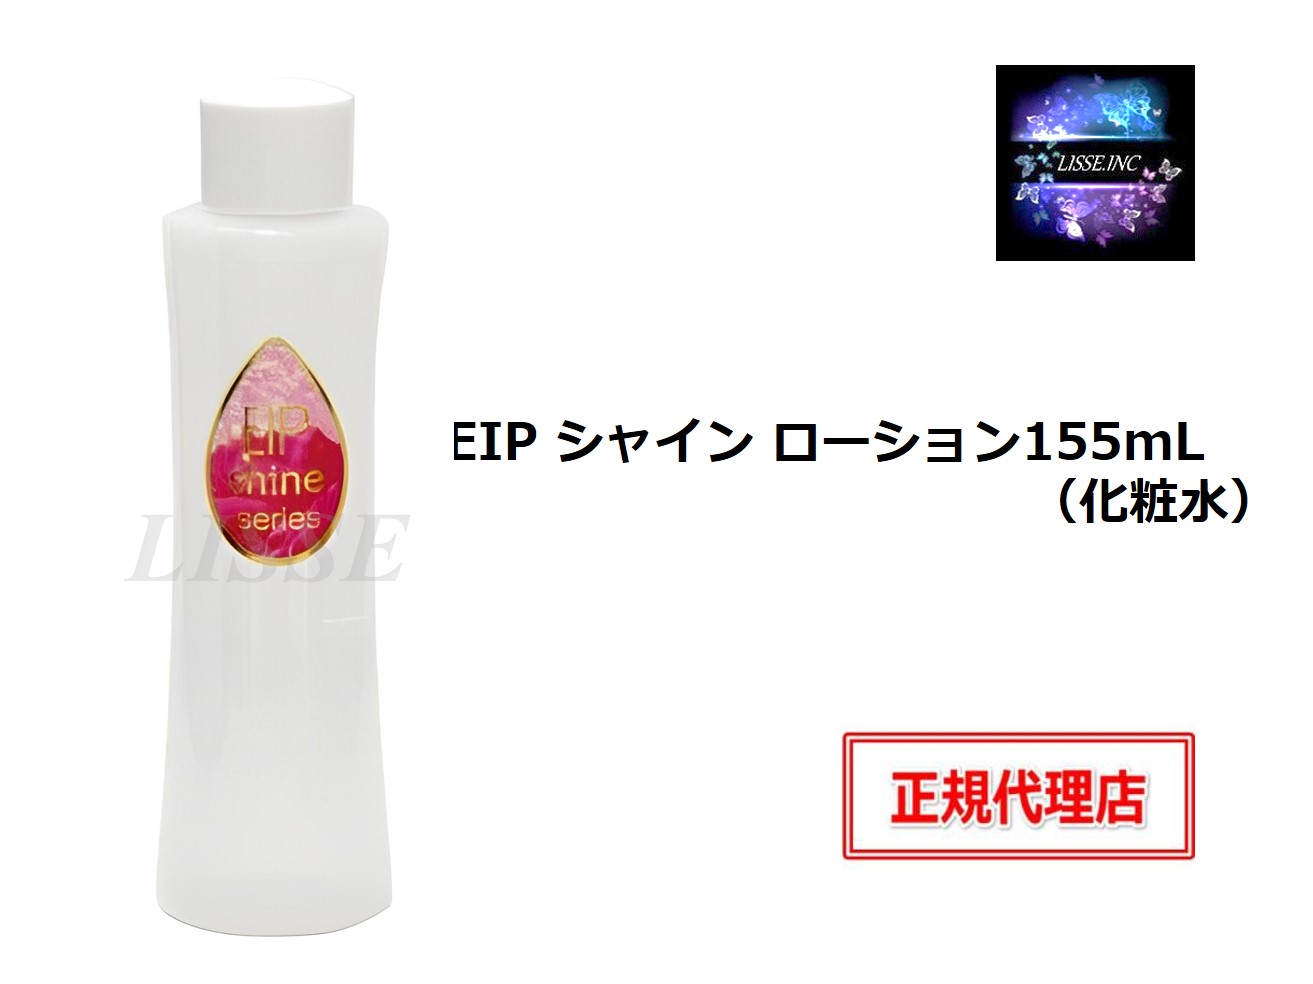 EIP シャイン ローション 155mL 化粧水 shine lotion エンチーム 正規代理店